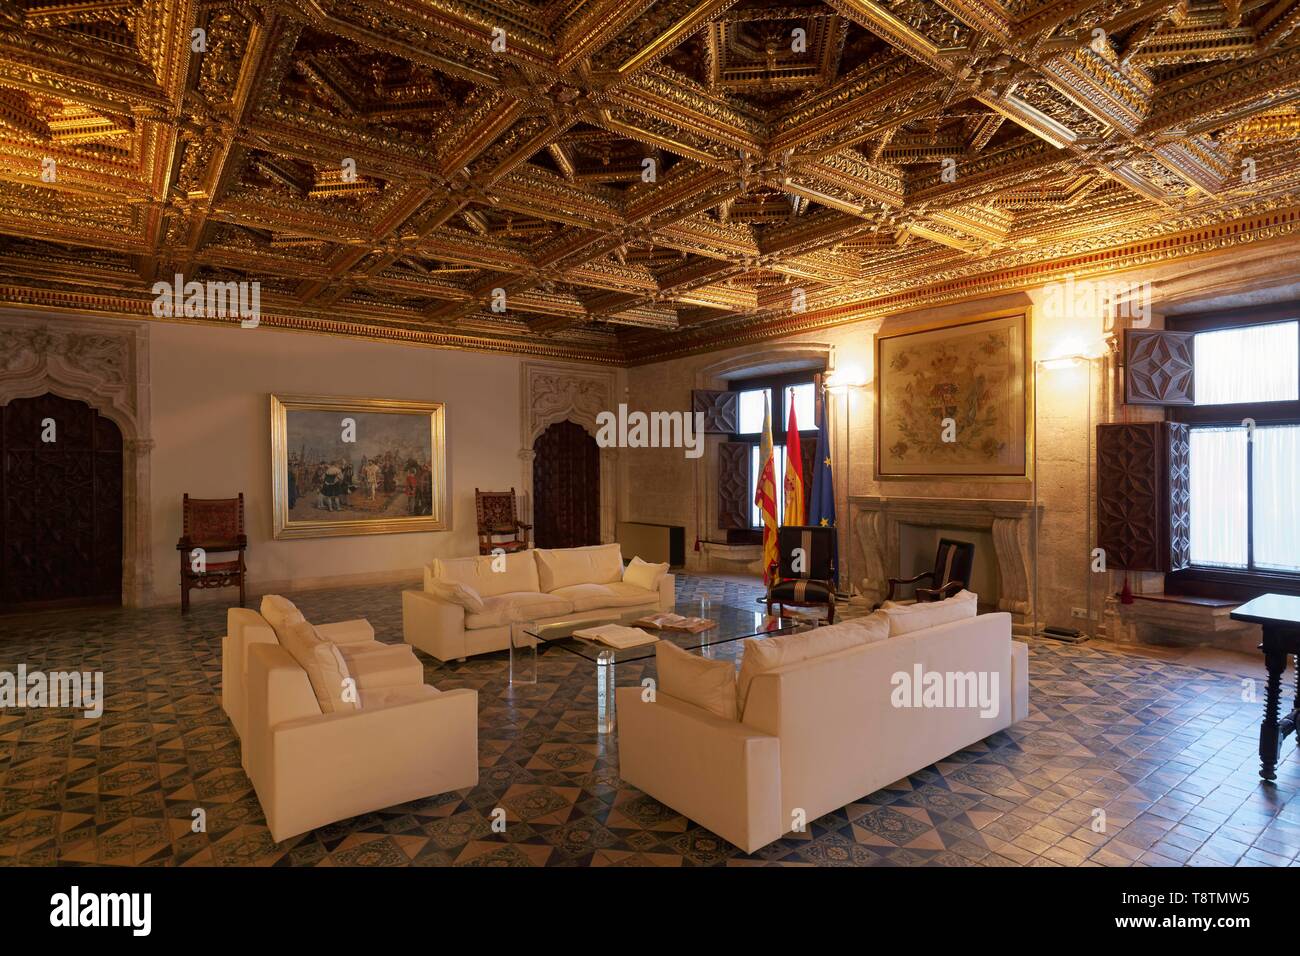 Salon avec plafond à caissons dorés, Palau de la Generalitat, siège du Gouvernement de la région autonome de Valence, Valence, Espagne Banque D'Images